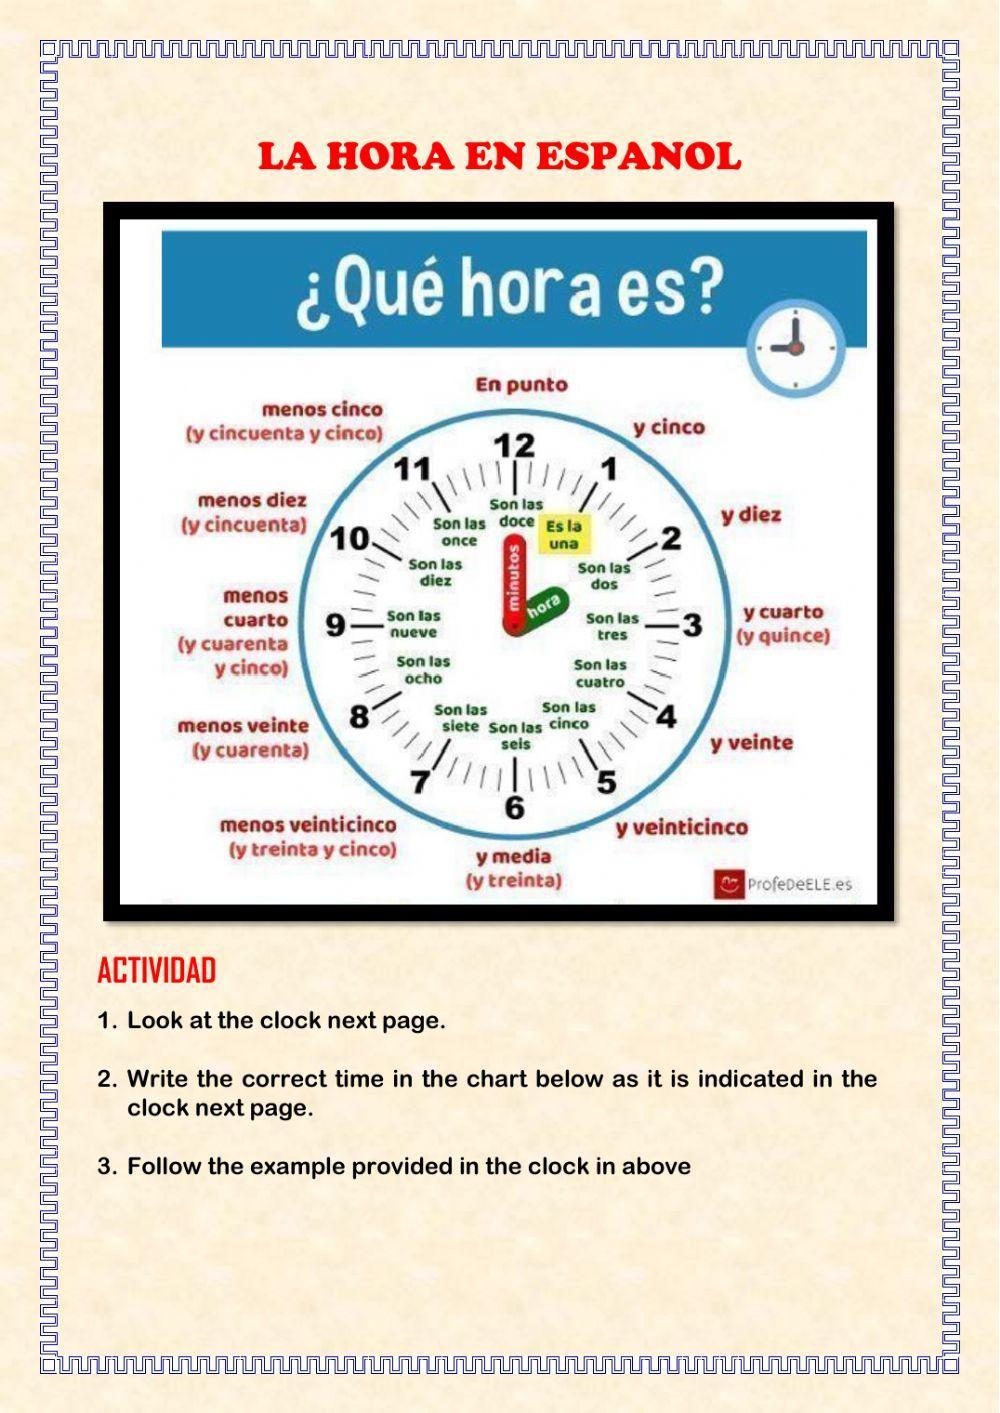 La hora en espanol